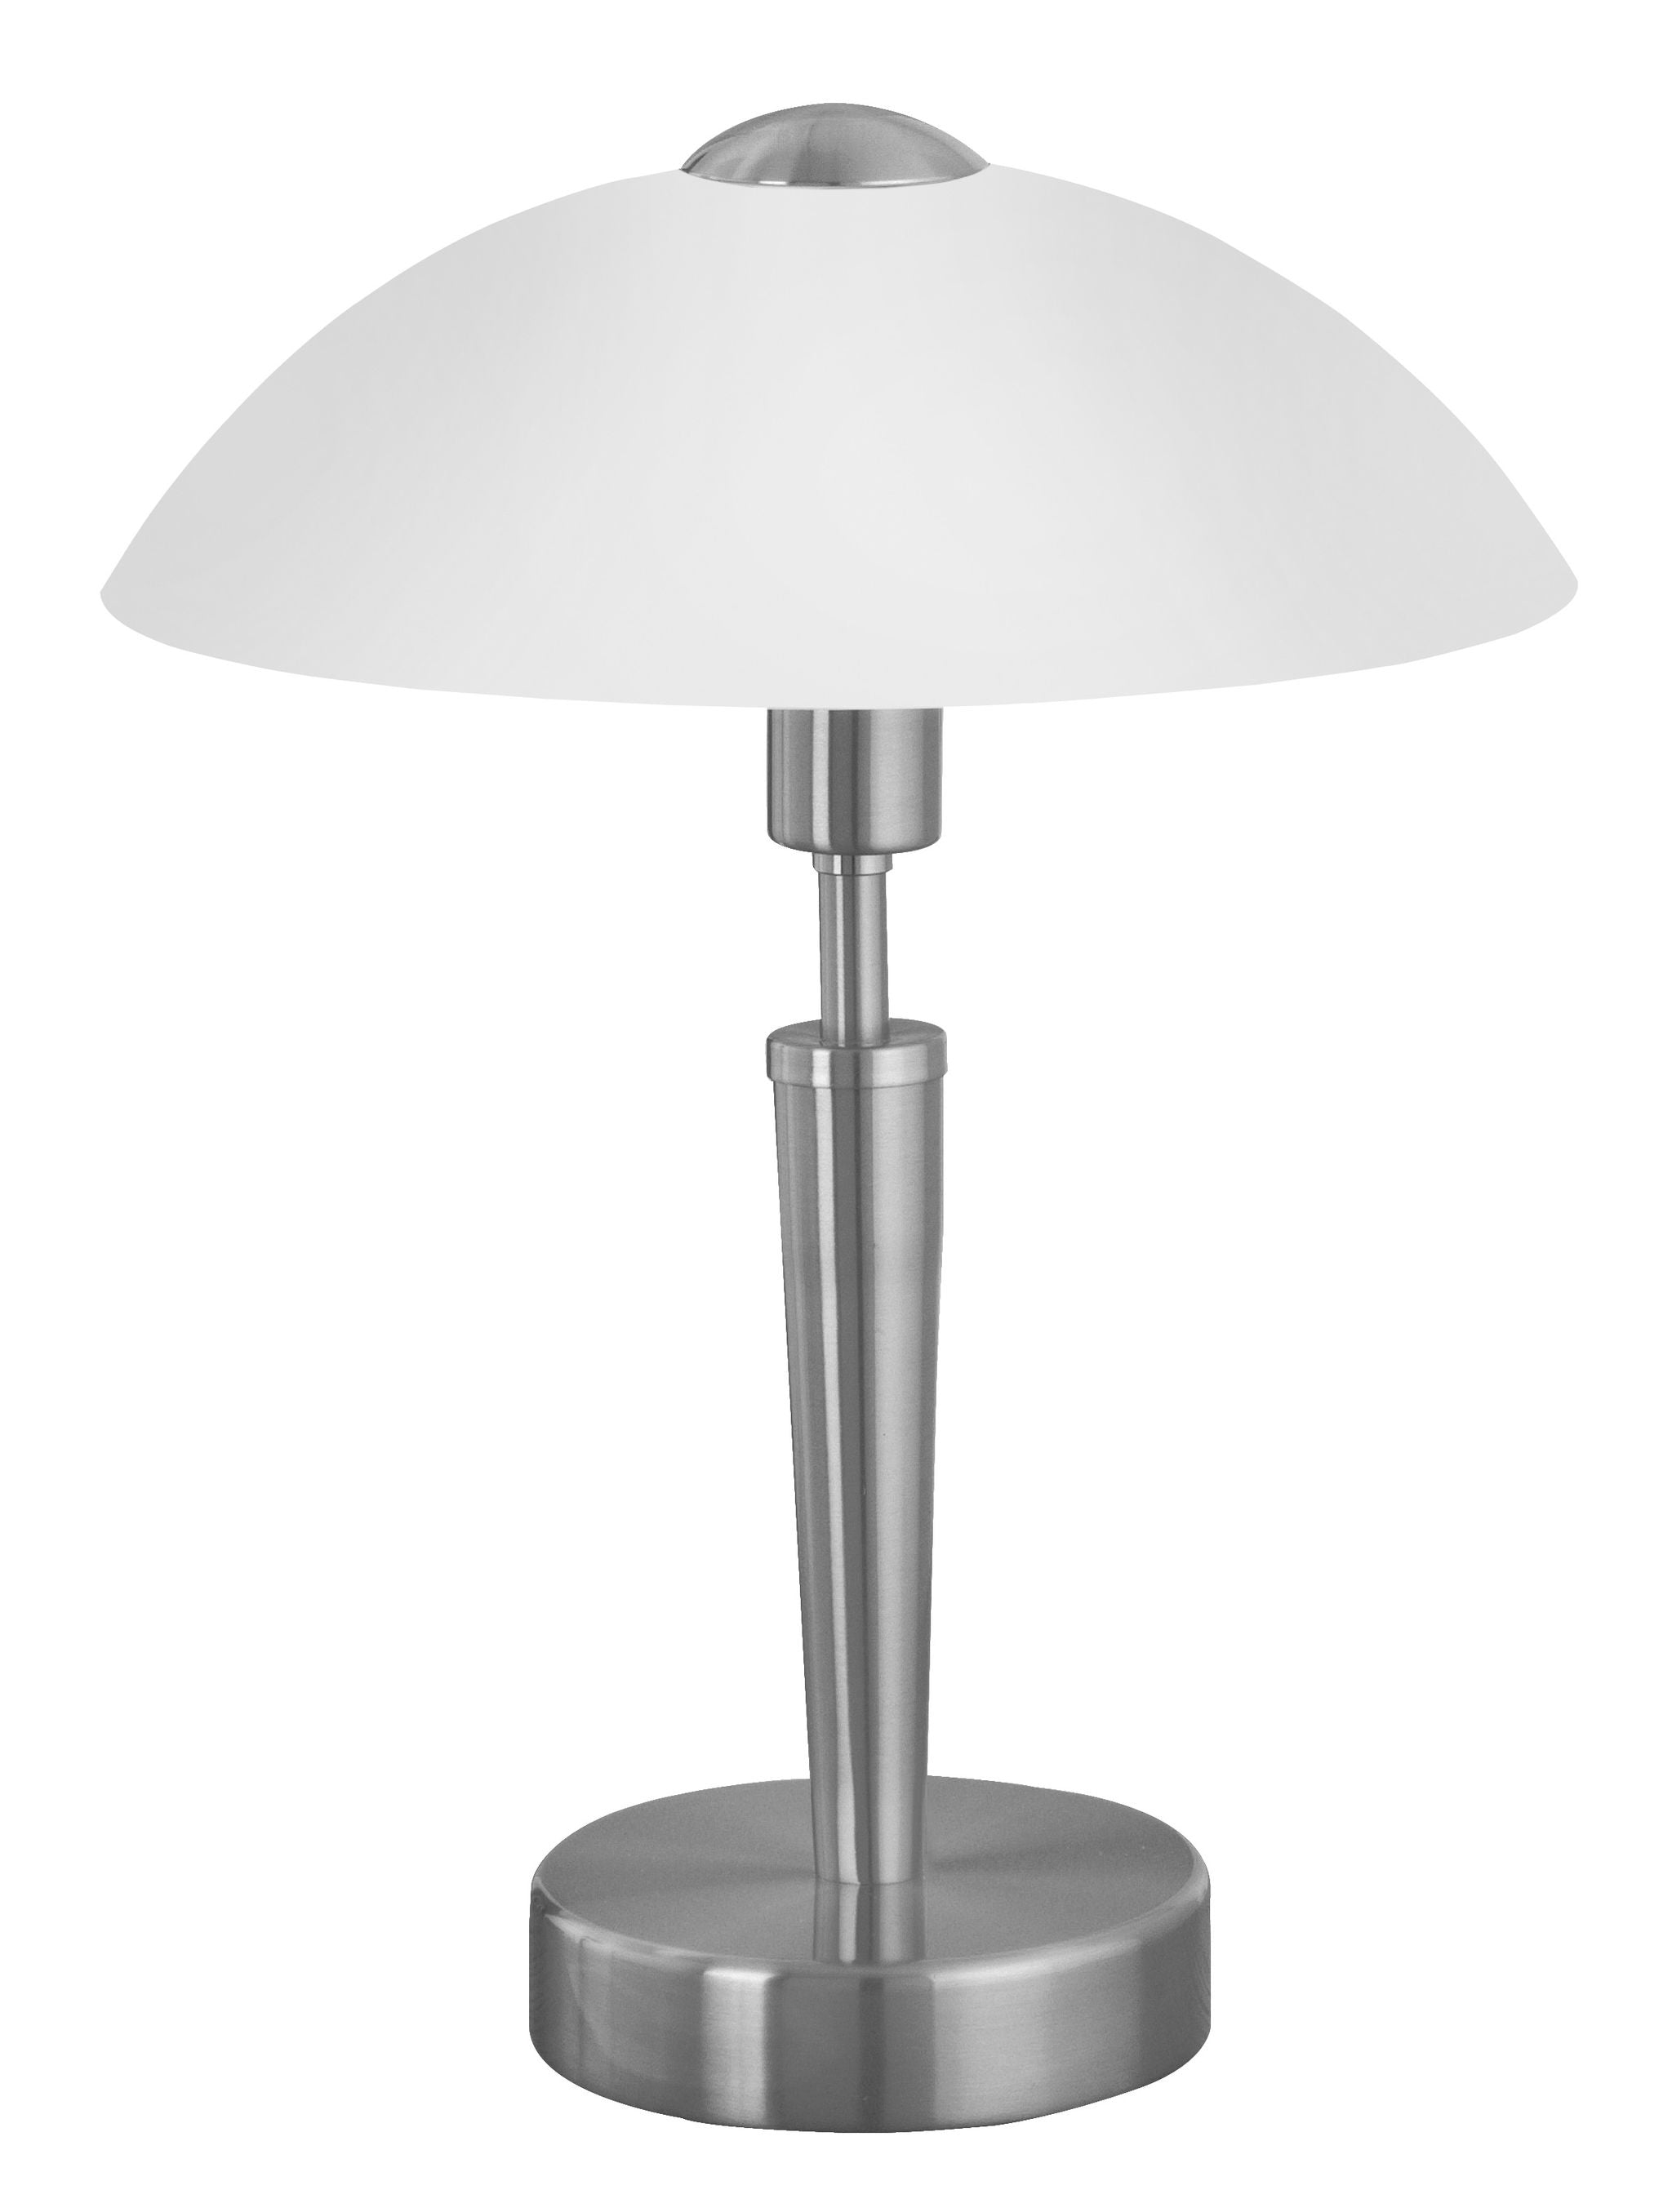 Solo 1 Lampe sur table Acier inoxydable - 85104A | EGLO